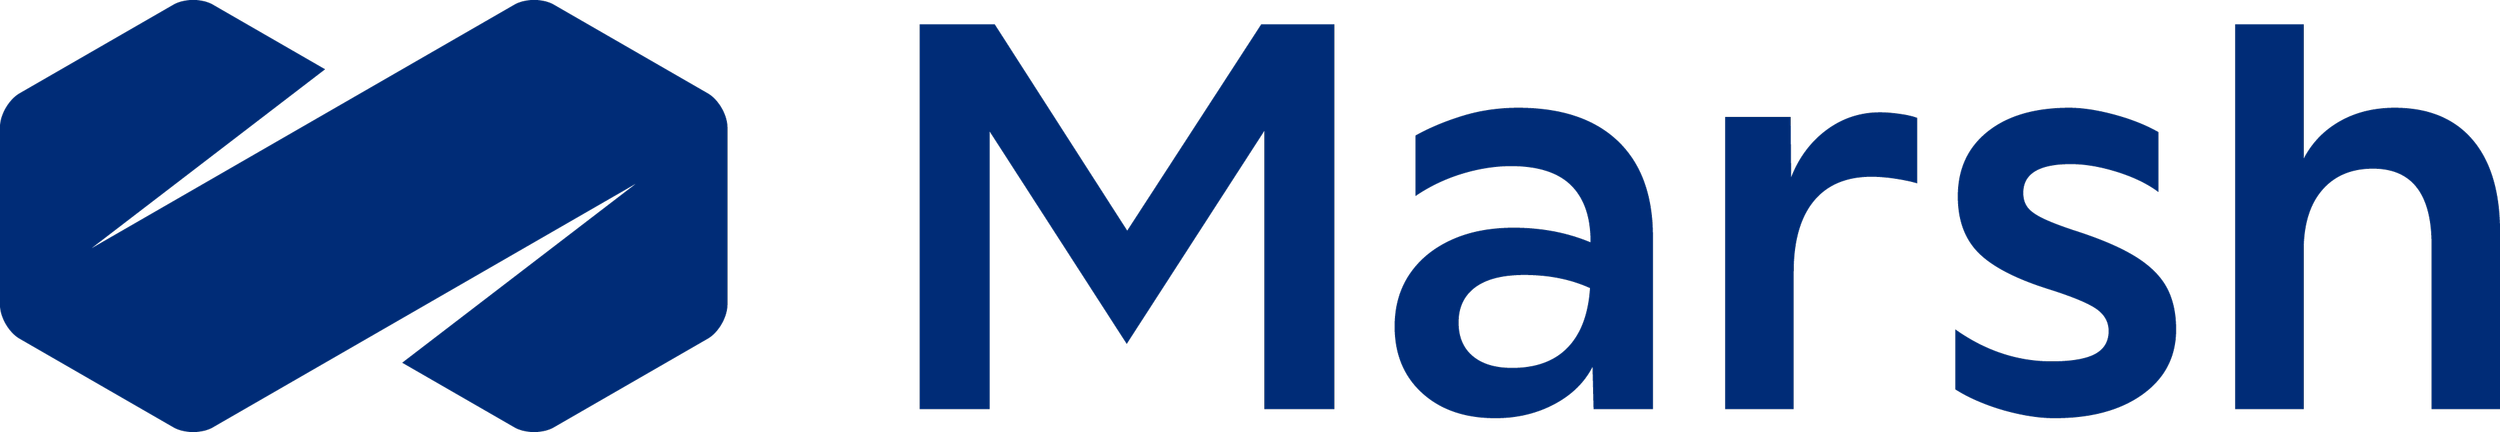 Marsh_Logo_h_rgb_c.png